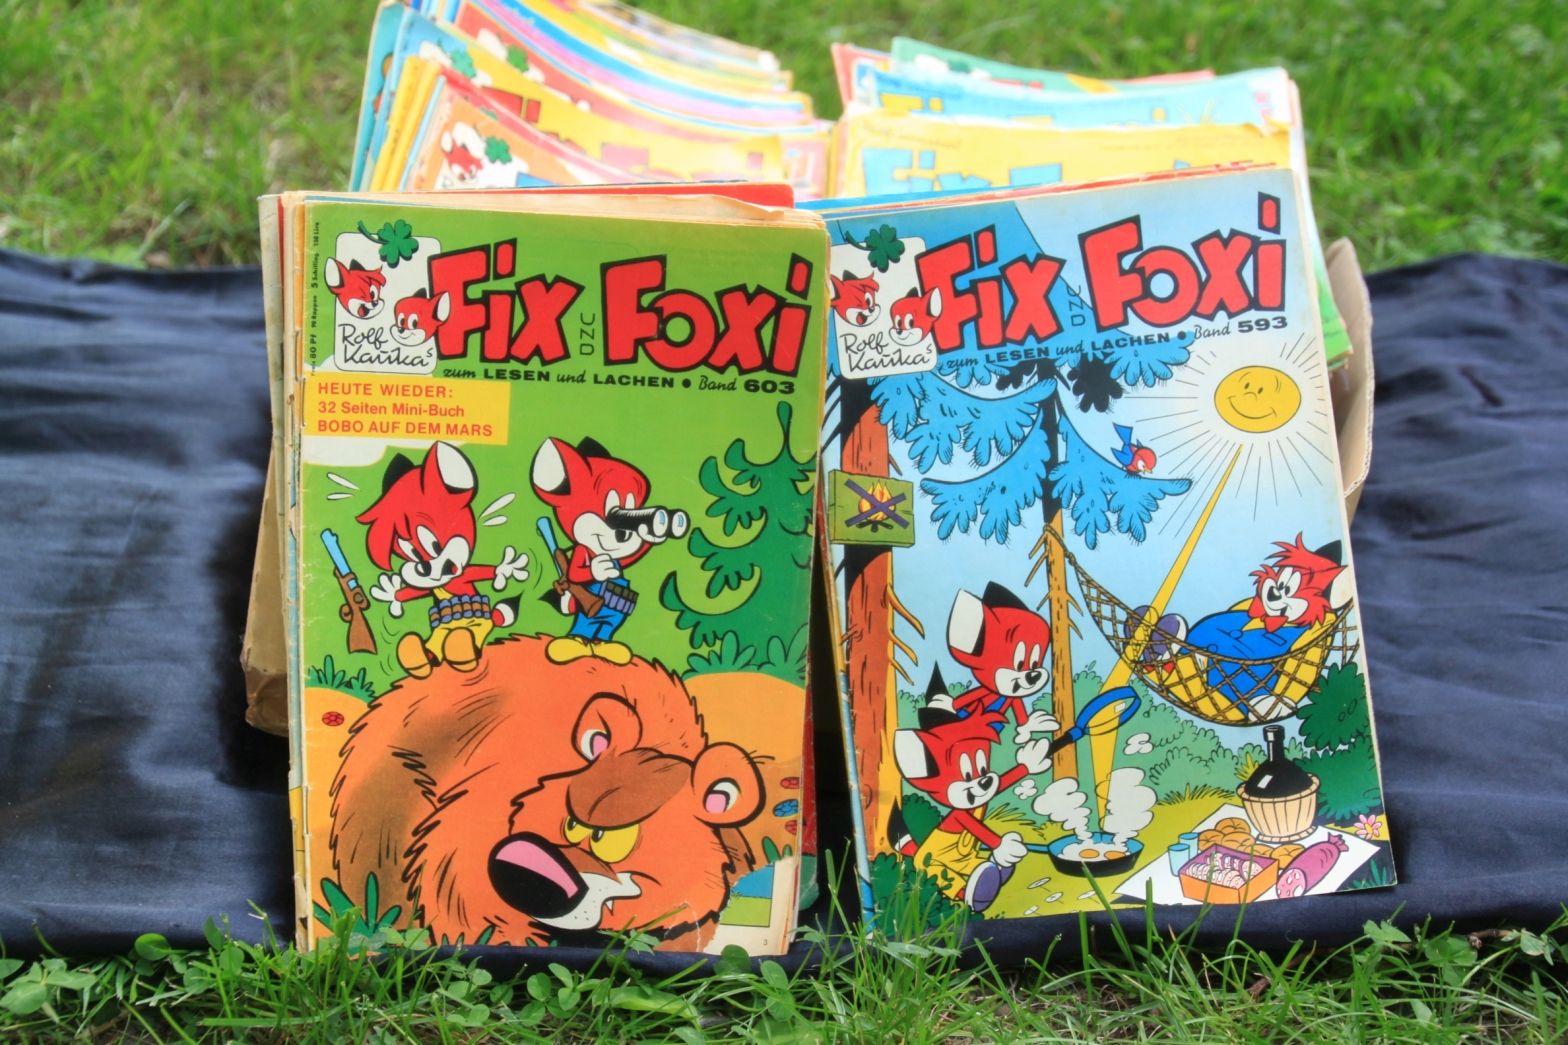   Fix & Foxi als ewige Pimpfe | Das Leben des Markranstädter Comic-Verlegers Rolf Kauka war tiefbraun durchwirkt  